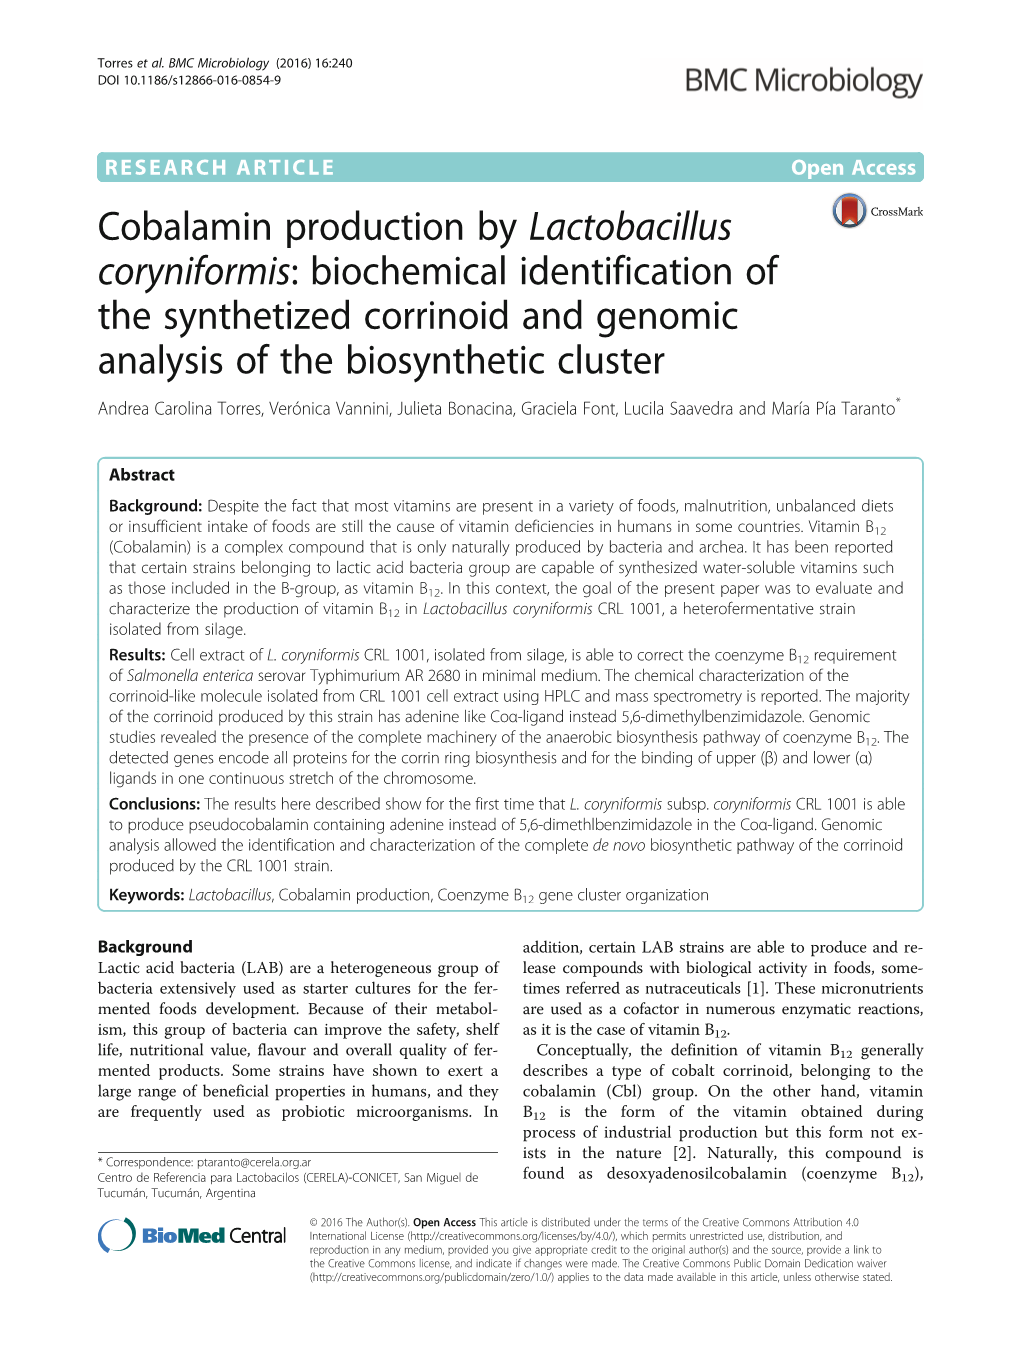 Cobalamin Production by Lactobacillus Coryniformis